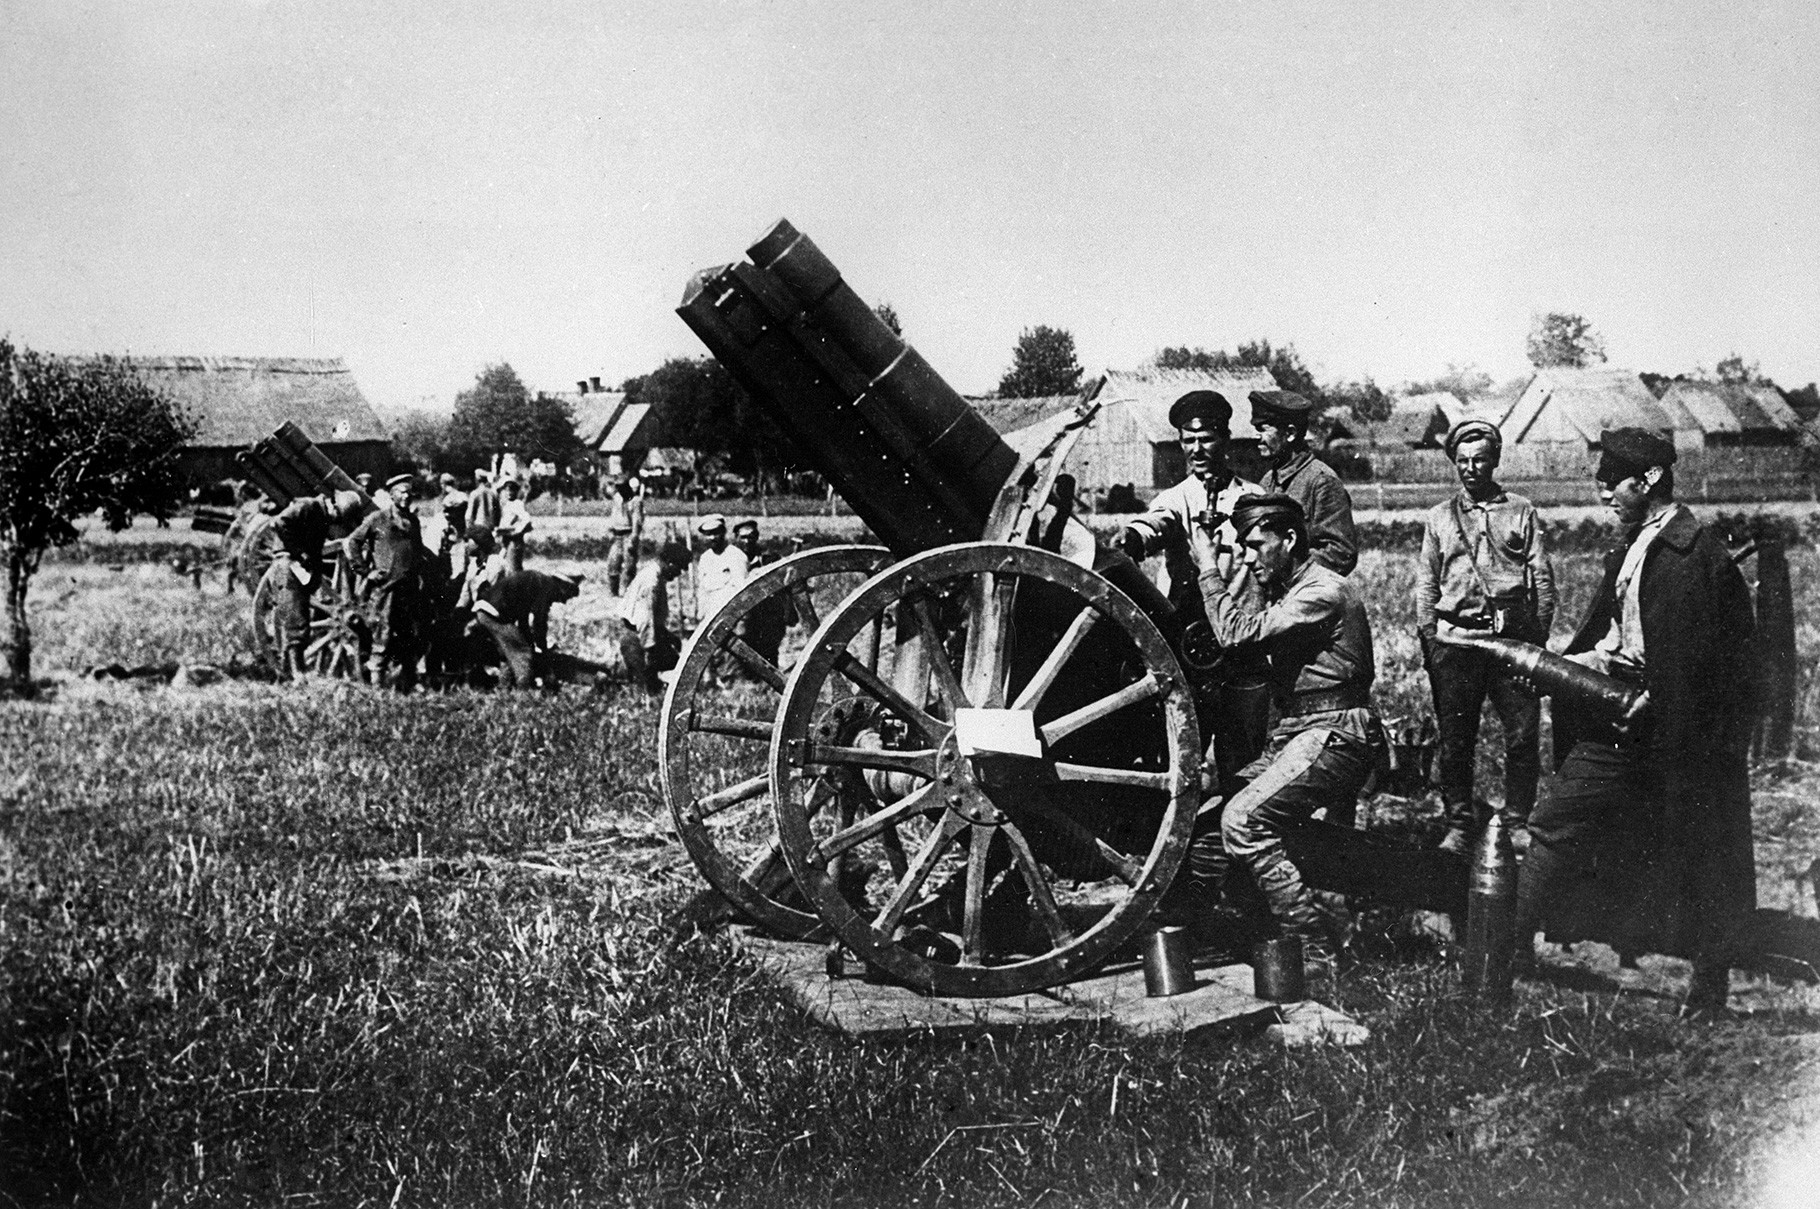 Sowjetische Artillerie während des sowjetisch-polnischen Krieges, Ukraine, 1920.